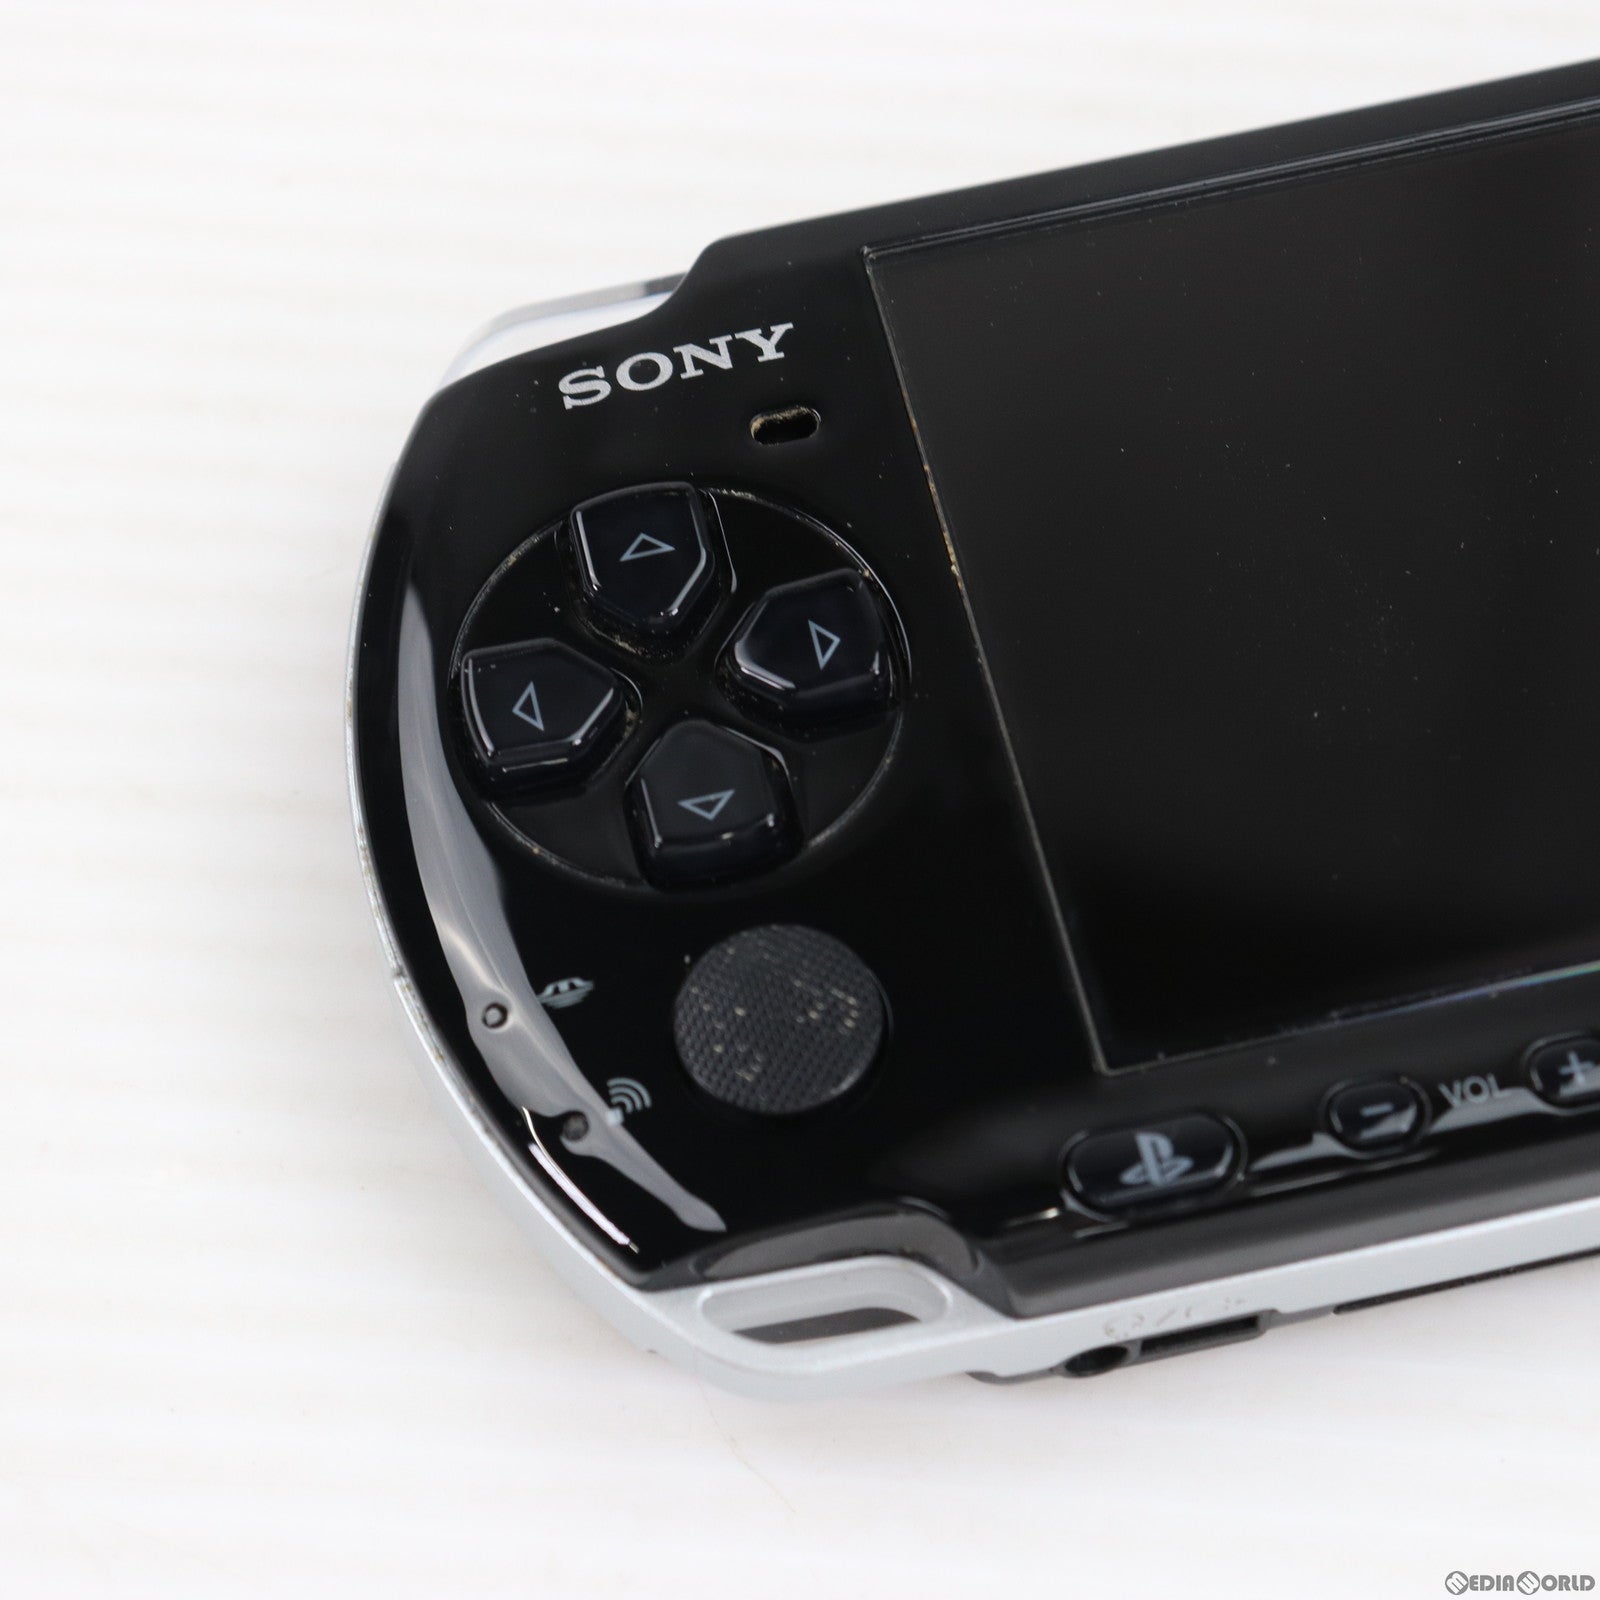 【中古即納】[本体][PSP]PSP プレイステーション・ポータブル ピアノ・ブラック(PSP-3000PB)(20081016)